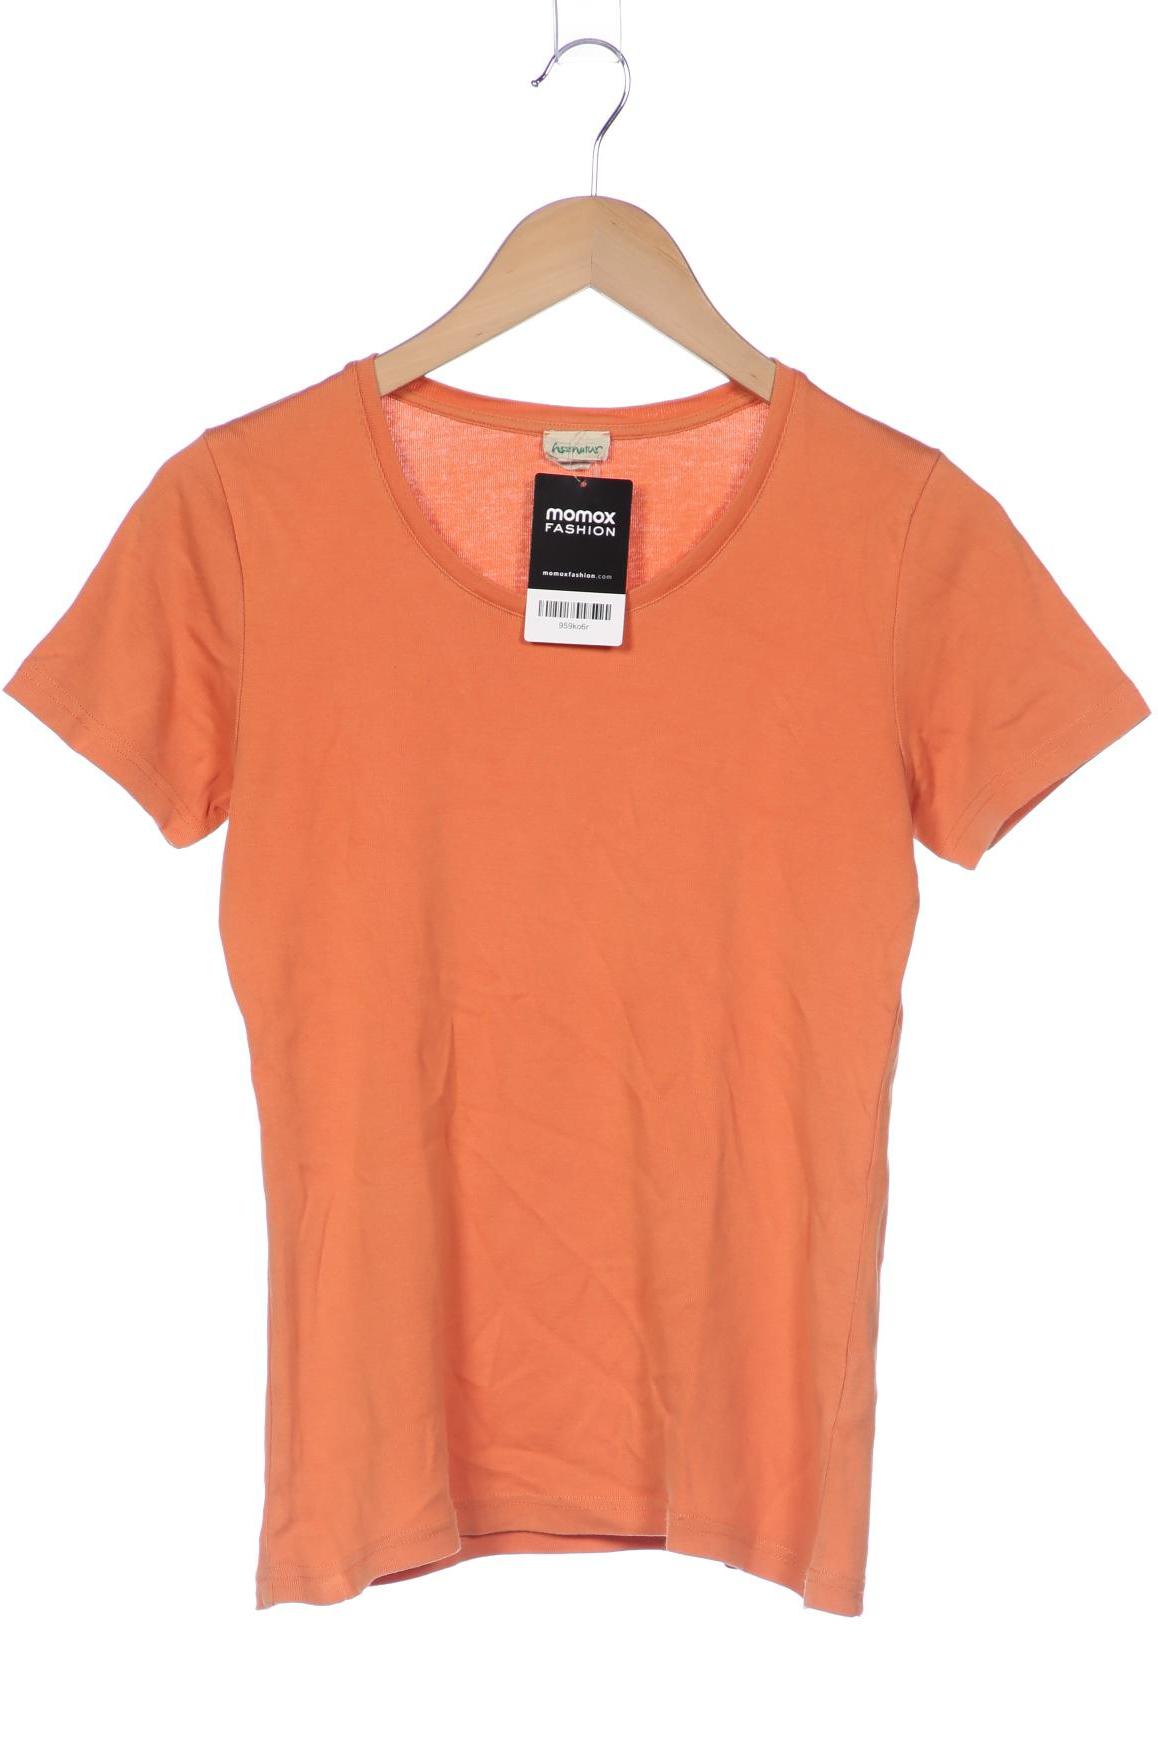 hessnatur Damen T-Shirt, orange, Gr. 36 von hessnatur